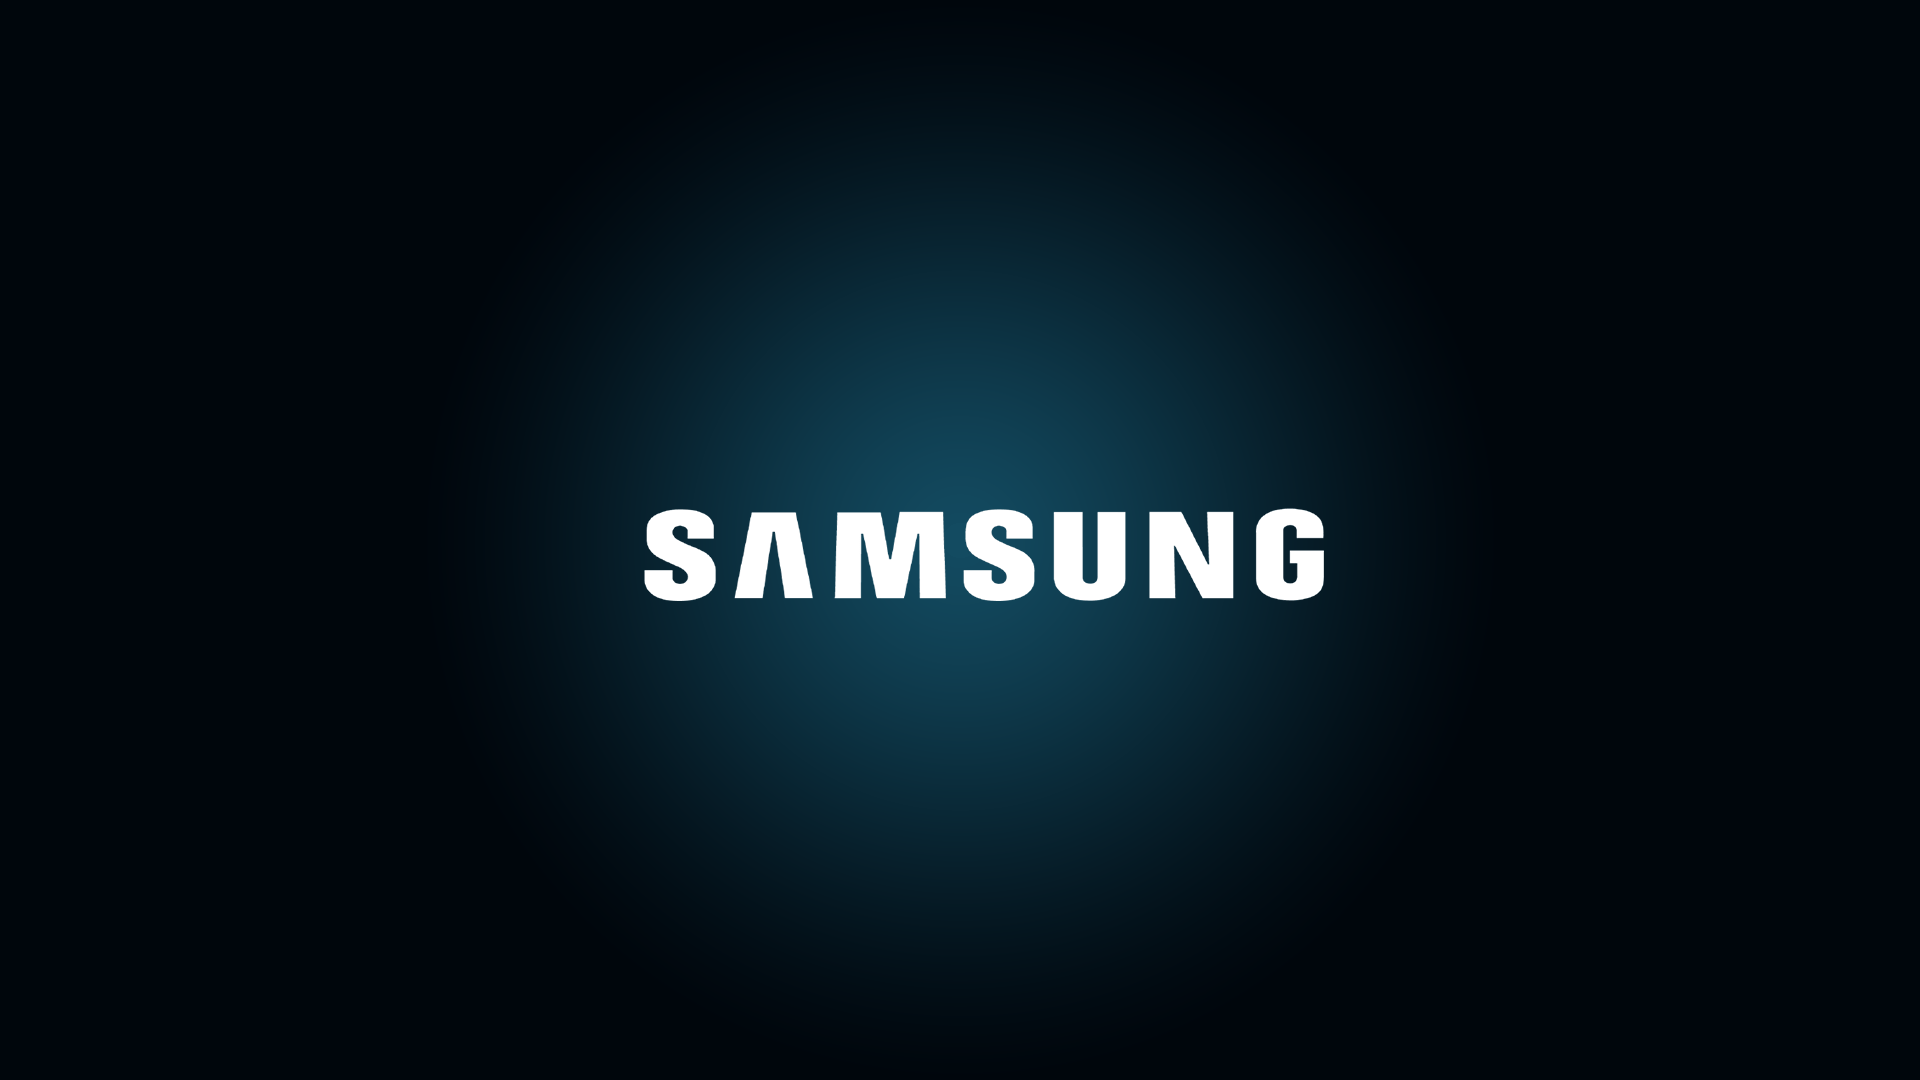 Làm mới giao diện laptop của bạn với hình nền laptop Samsung độc đáo và đẹp mắt. Tận hưởng ánh mắt thích thú của mọi người khi nhìn thấy máy tính của bạn đang sử dụng hình nền tuyệt đẹp này.